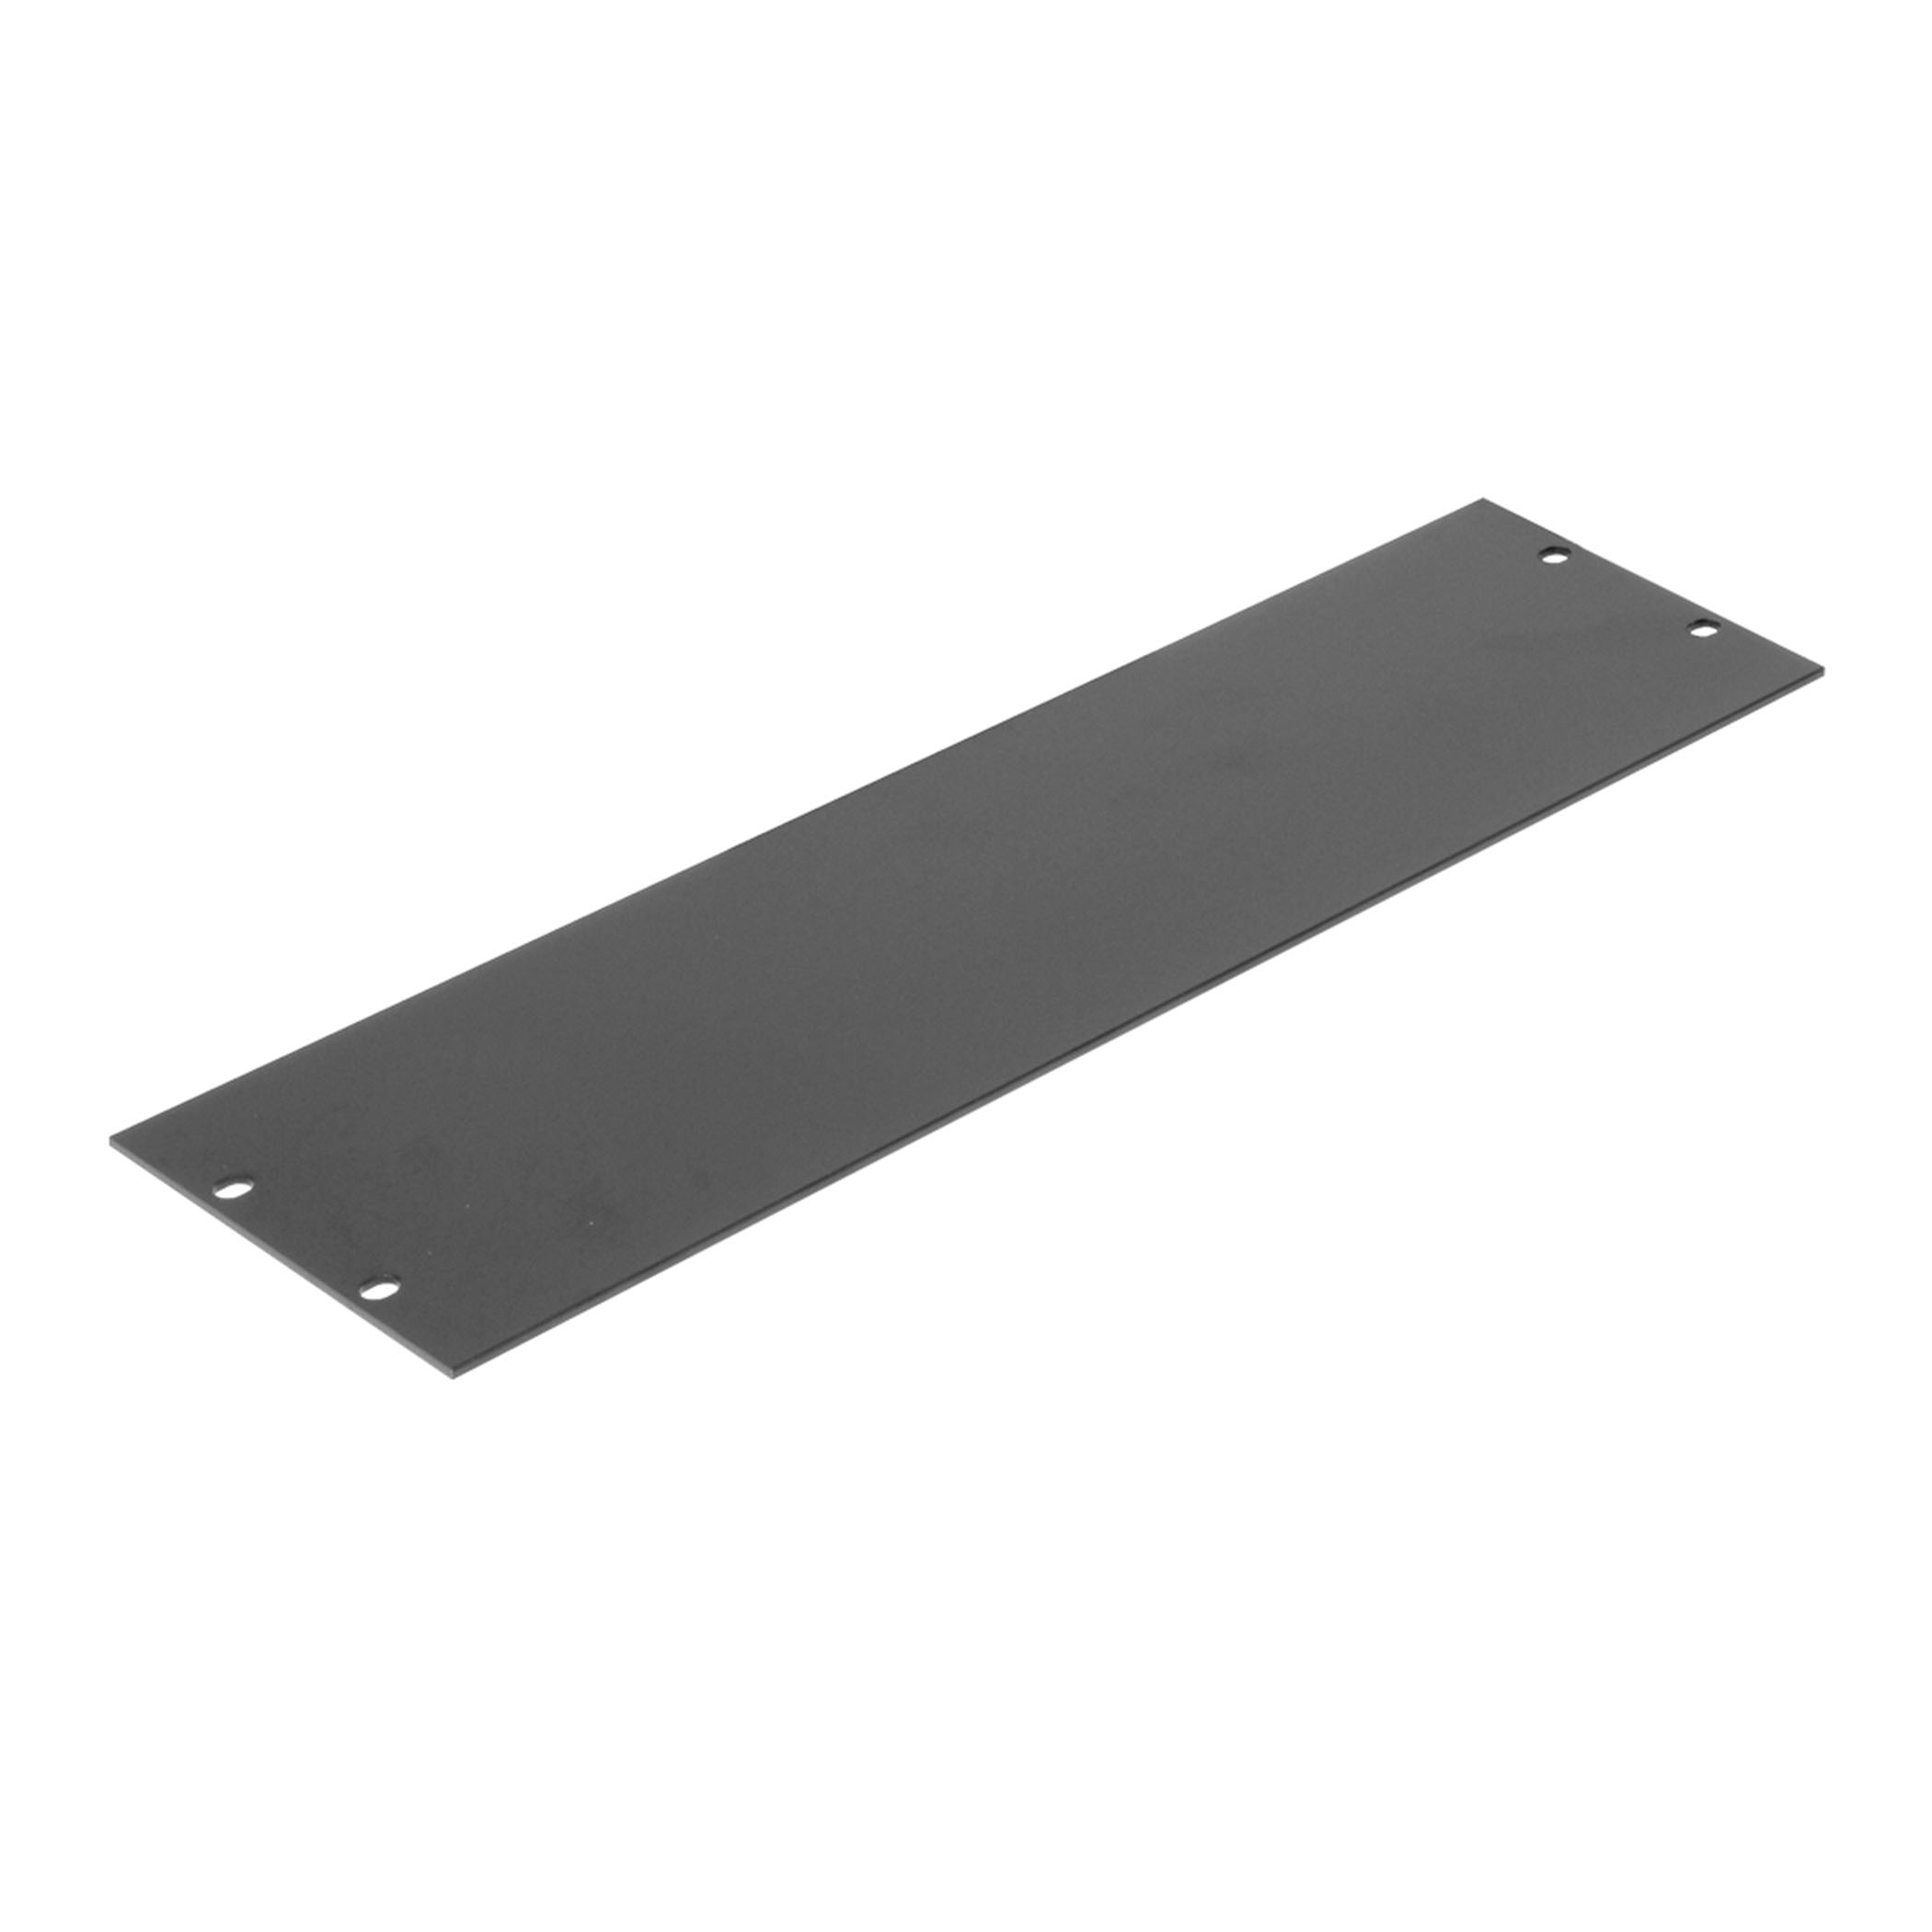 19" 3U Flat Rack Panel, Aluminium - r1275-3ukh